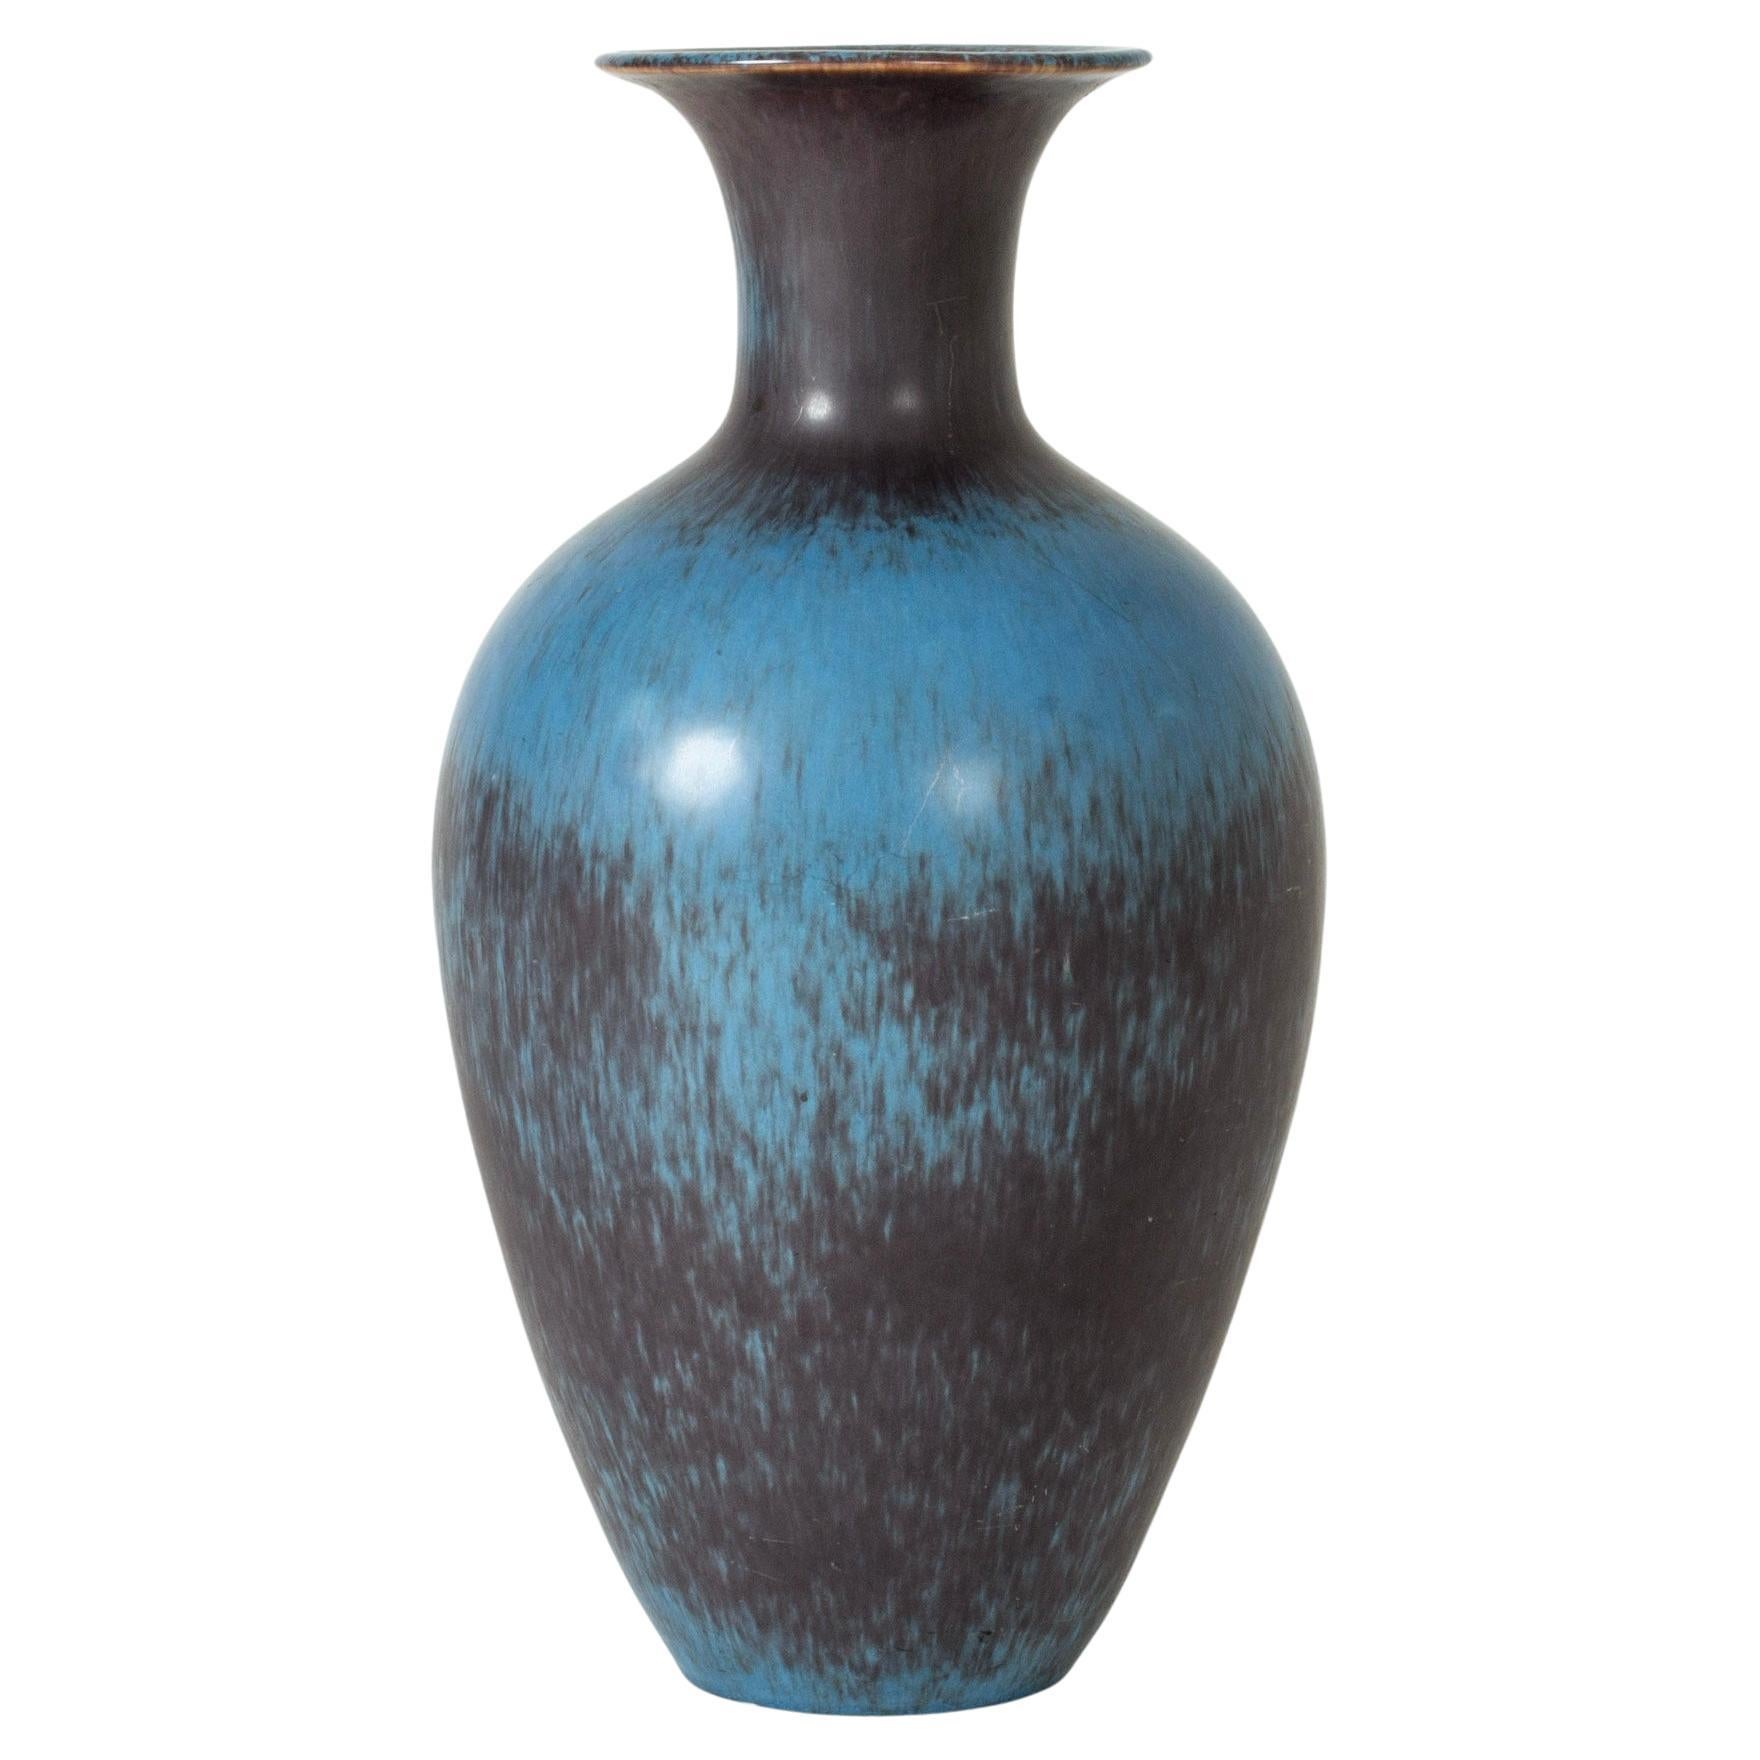 Vintage Midcentury Stoneware Floor Vase by Gunnar Nylund, Sweden, 1940s For Sale